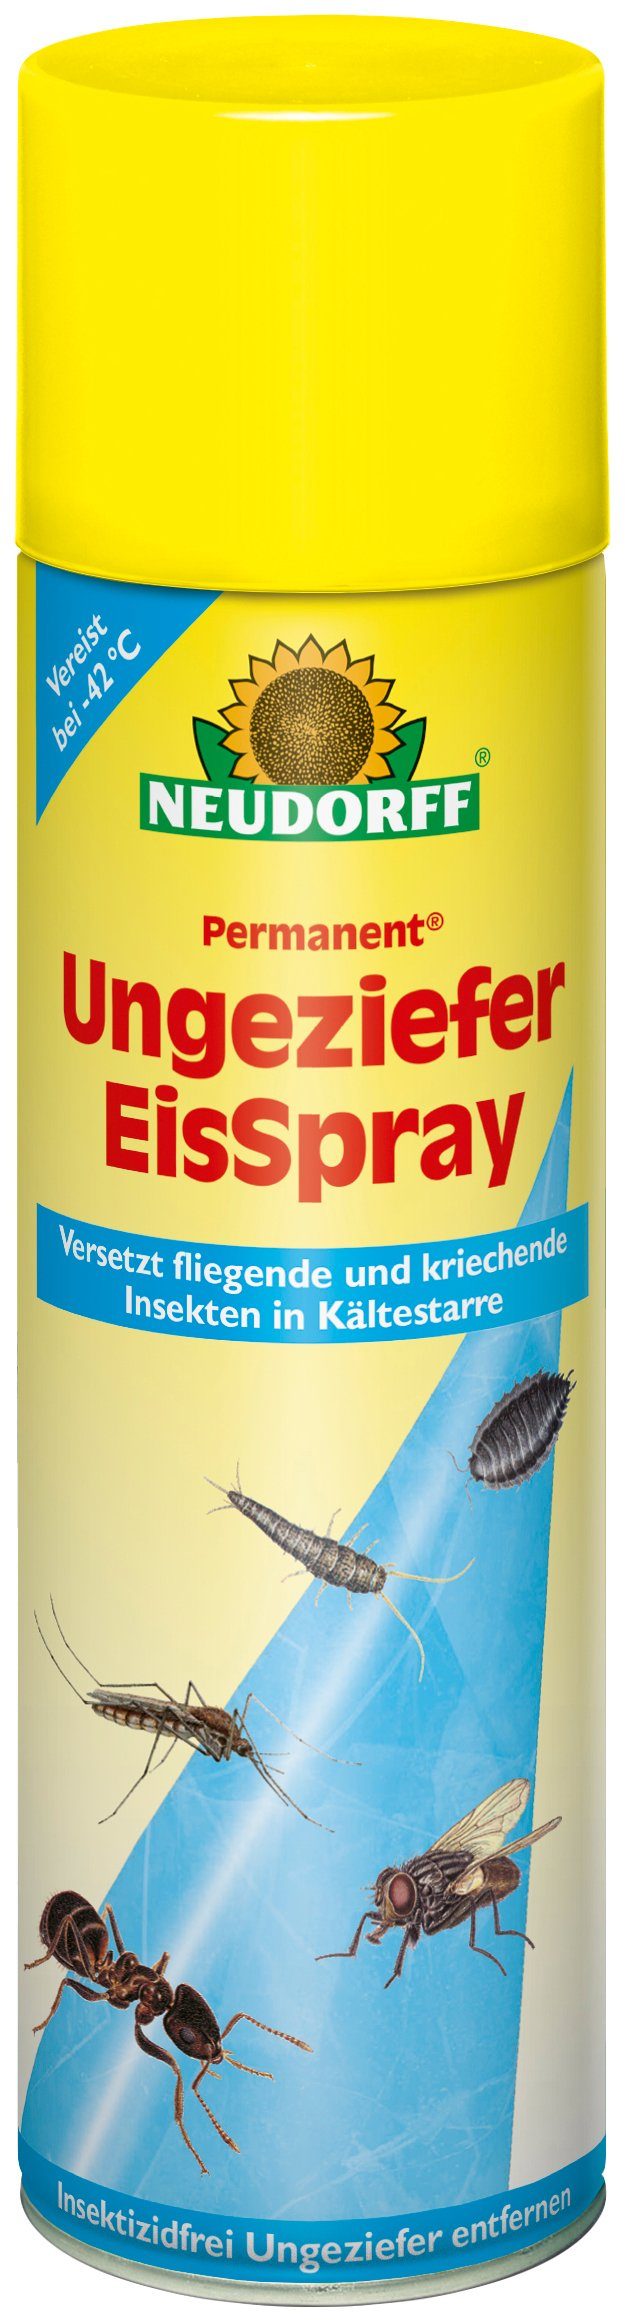 Neudorff Insektenspray Permanent Ungeziefer EisSpray, 500 ml, Packung